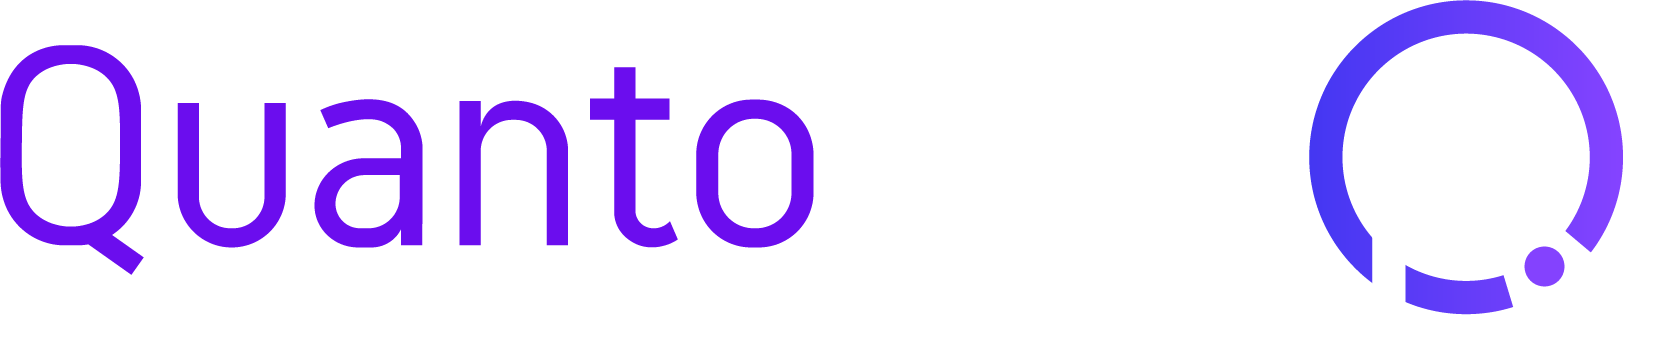 QuantoPay logo